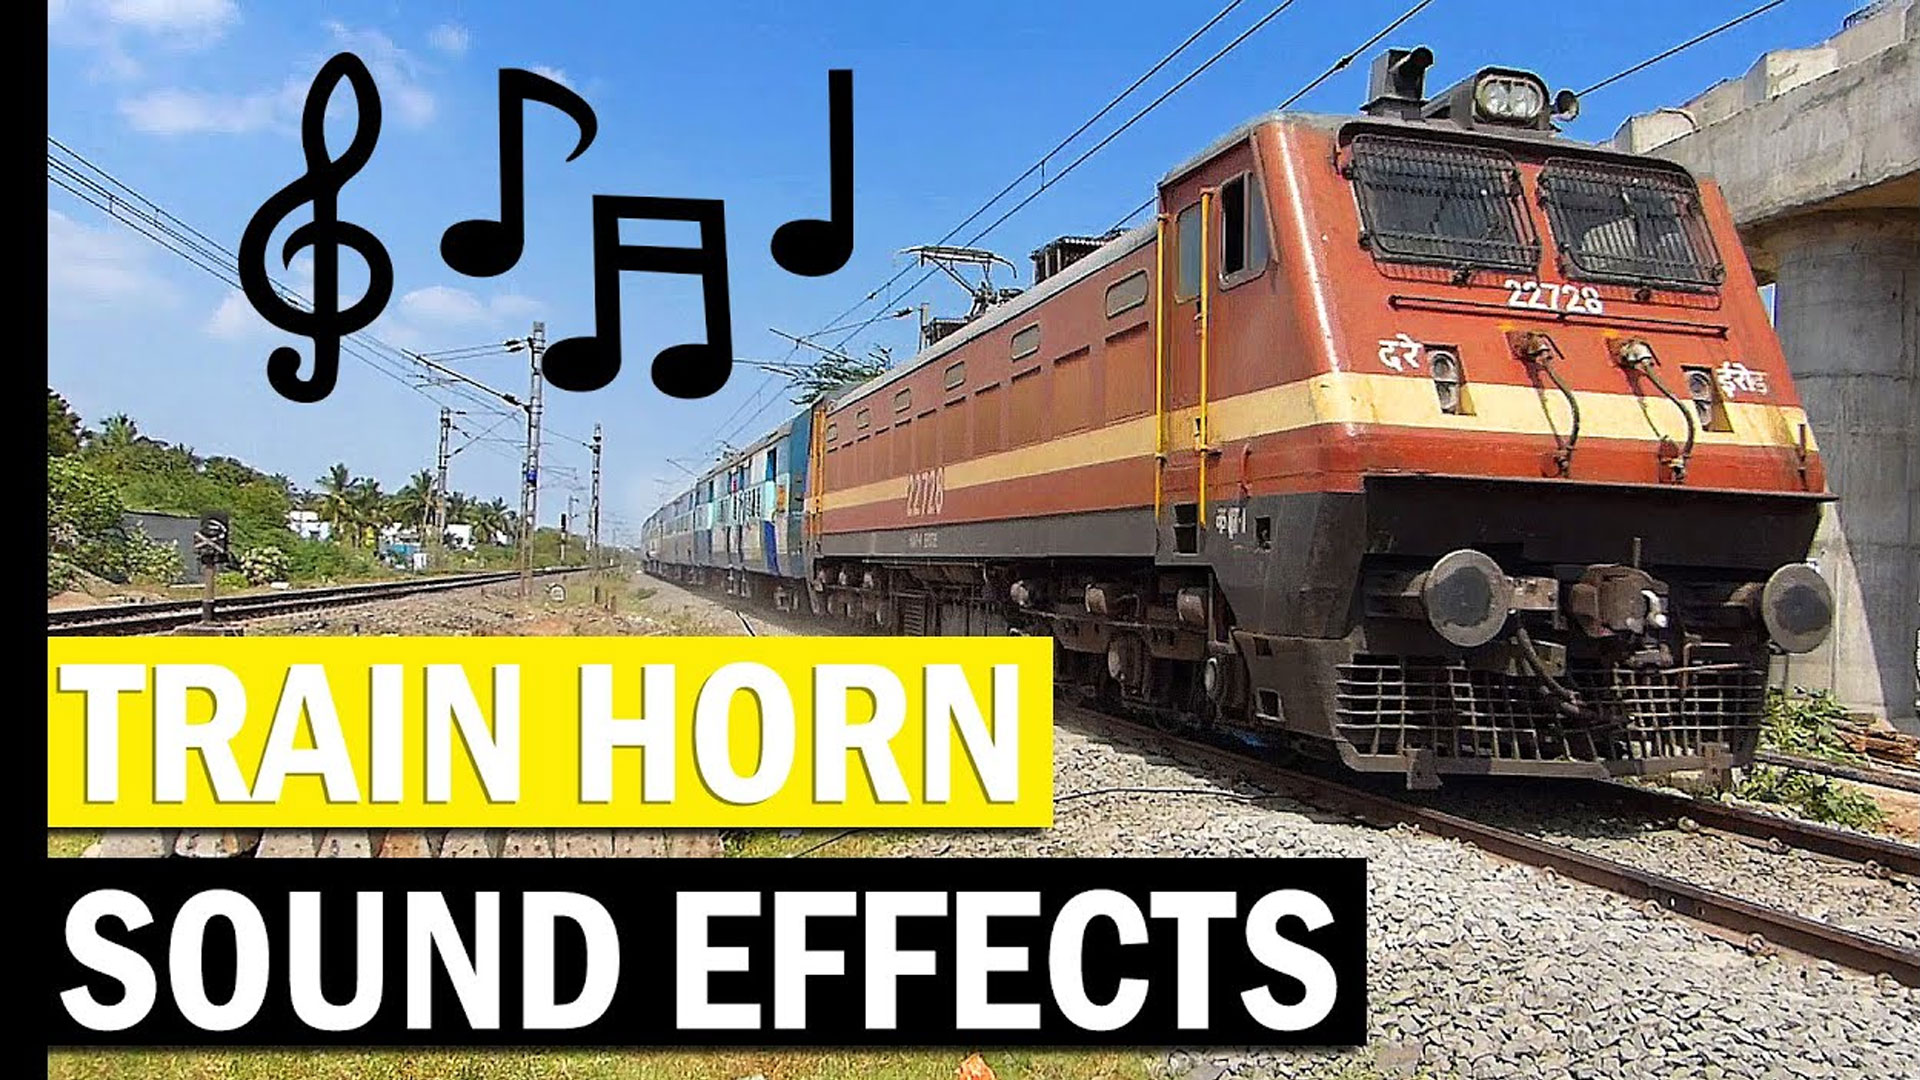 Train-horns